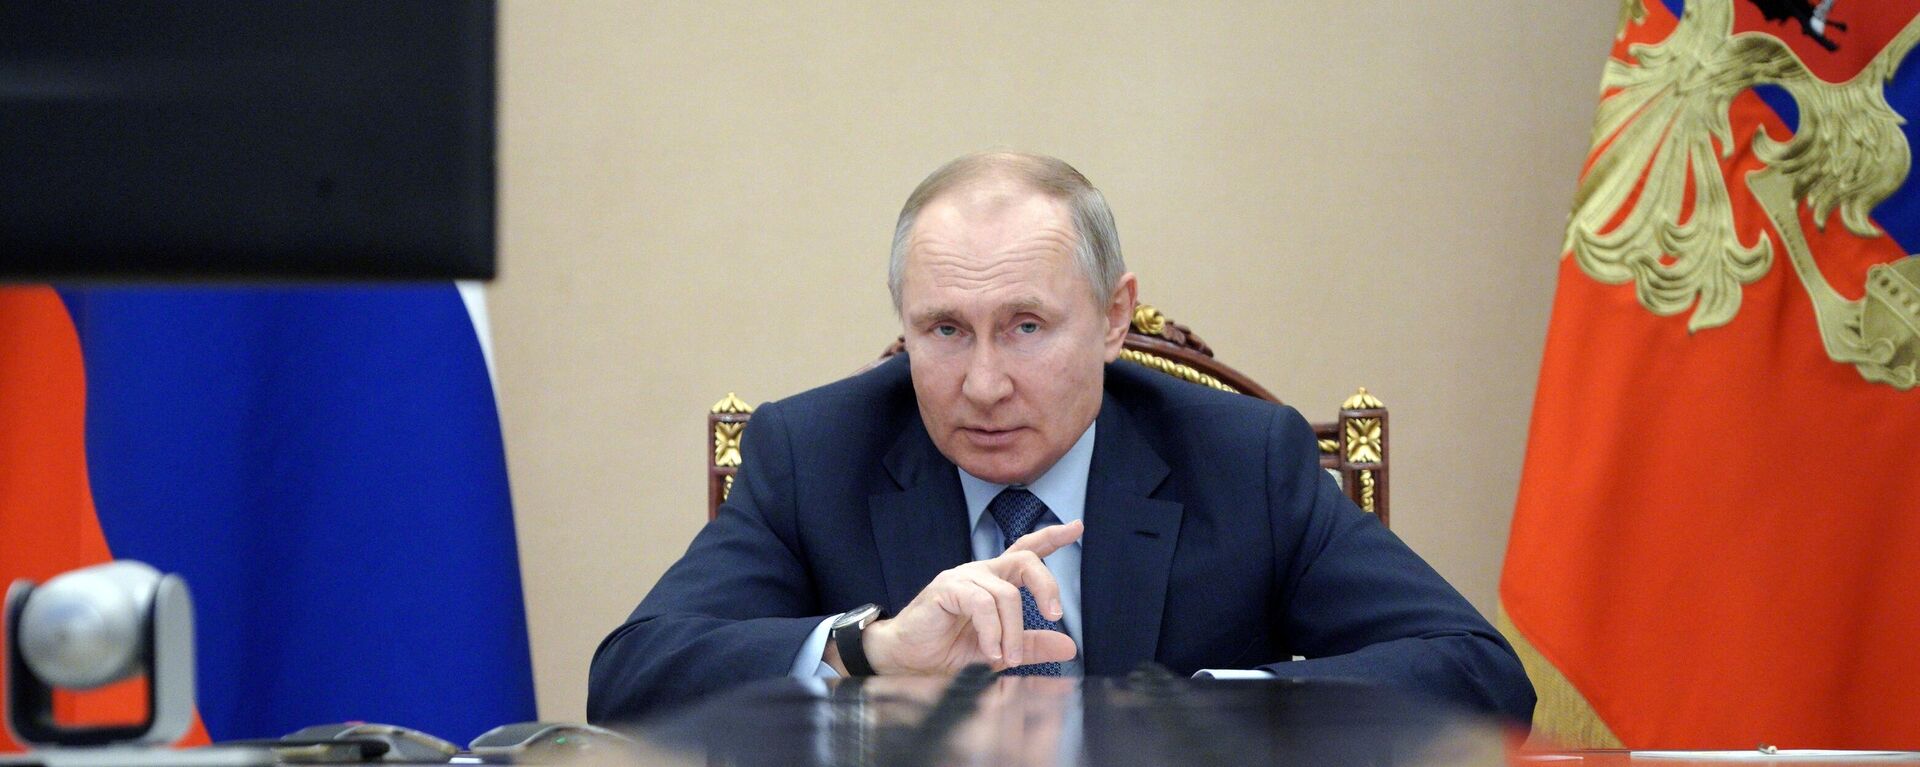 Президент РФ Владимир Путин - Sputnik Узбекистан, 1920, 19.03.2021